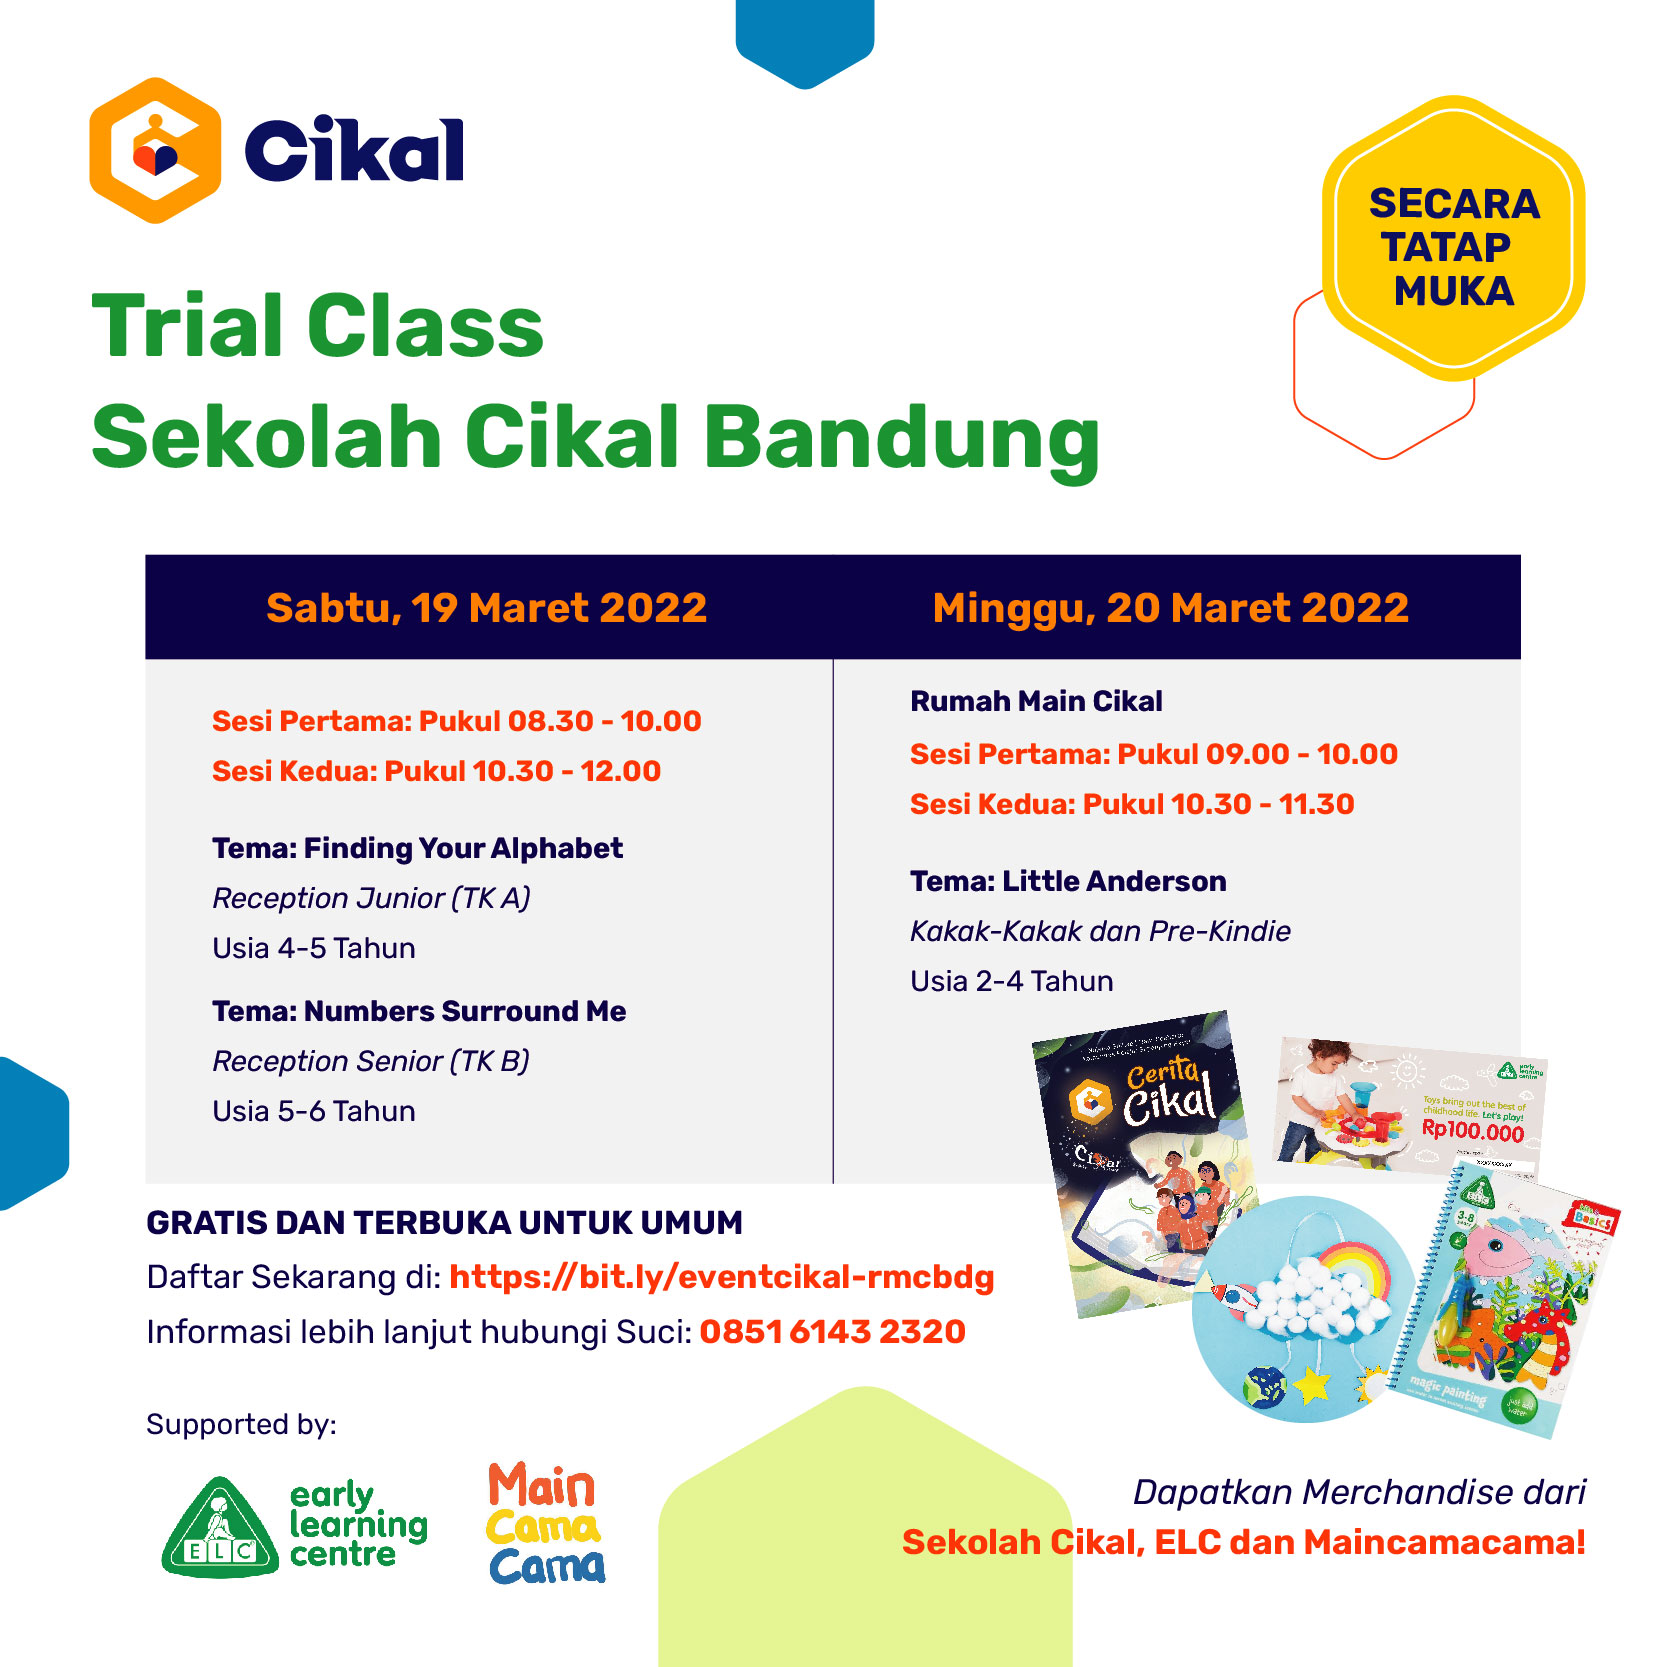 Trial Class Sekolah Cikal Bandung (Secara Tatap Muka) 